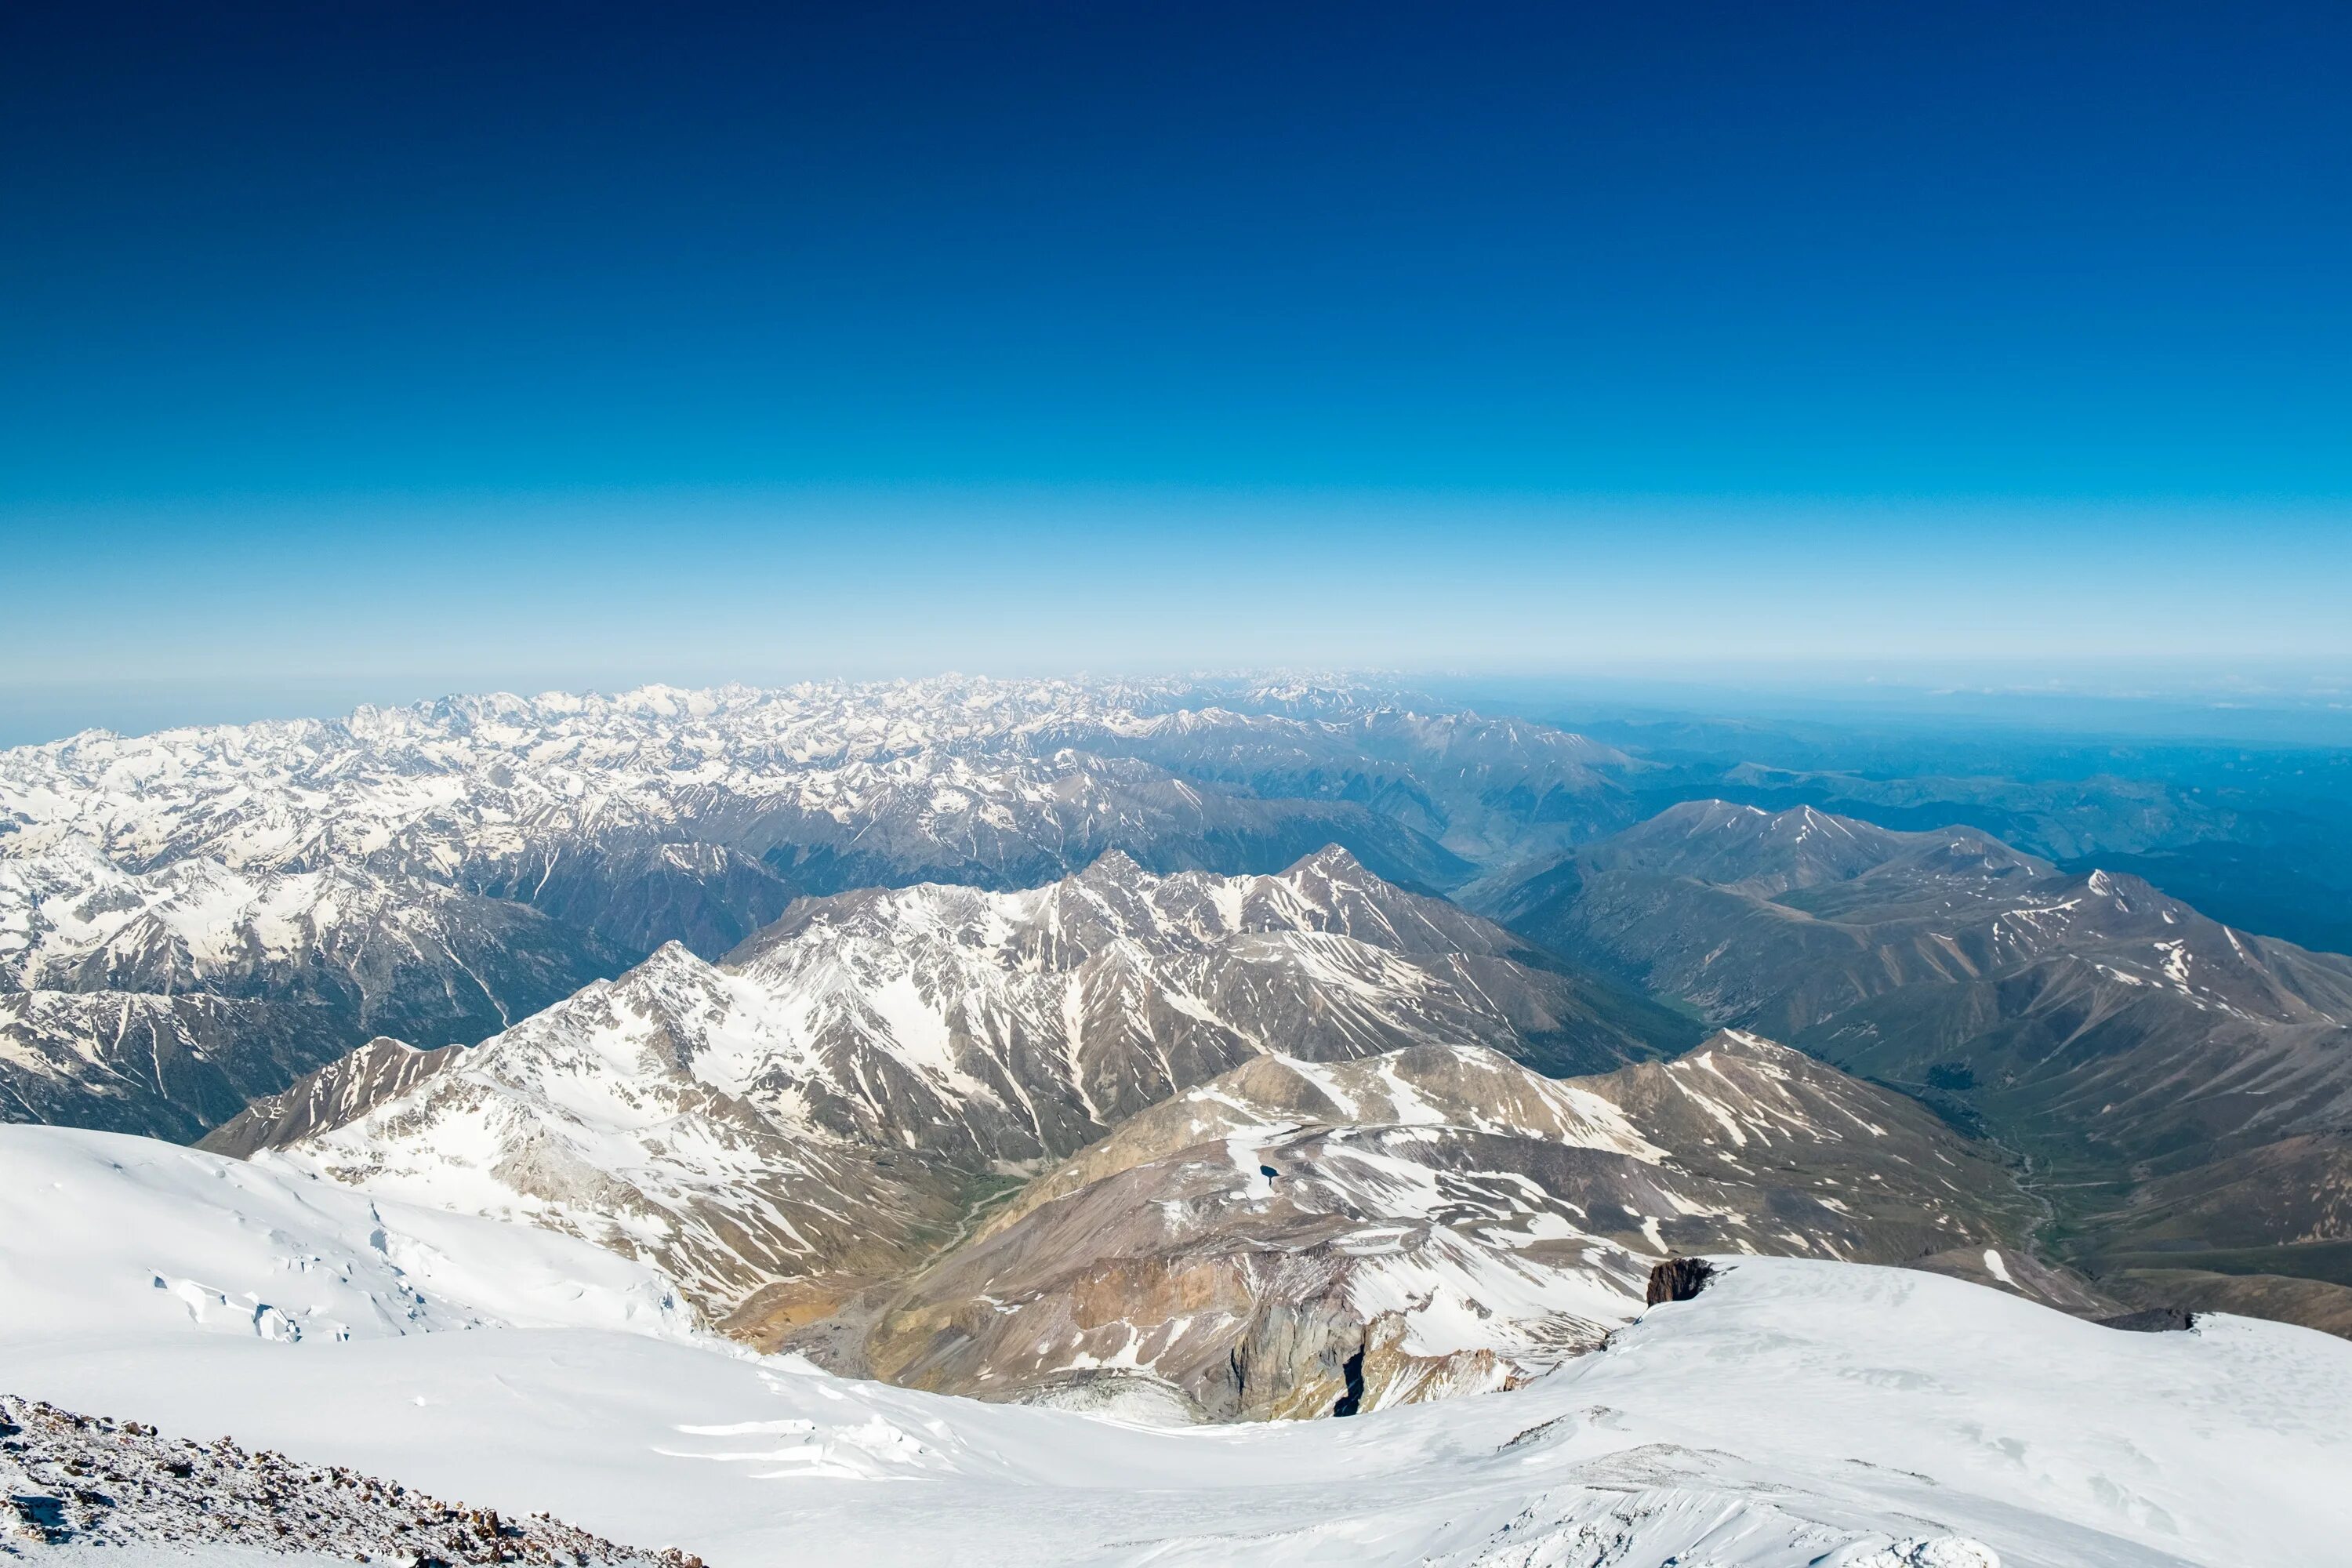 3 вершины эльбруса. Вид с вершины Эльбруса. Эльбрус вид сверху. Красивый вид с горы Эльбрус перспектива. Вид на Эльбрус с севера на Юг.